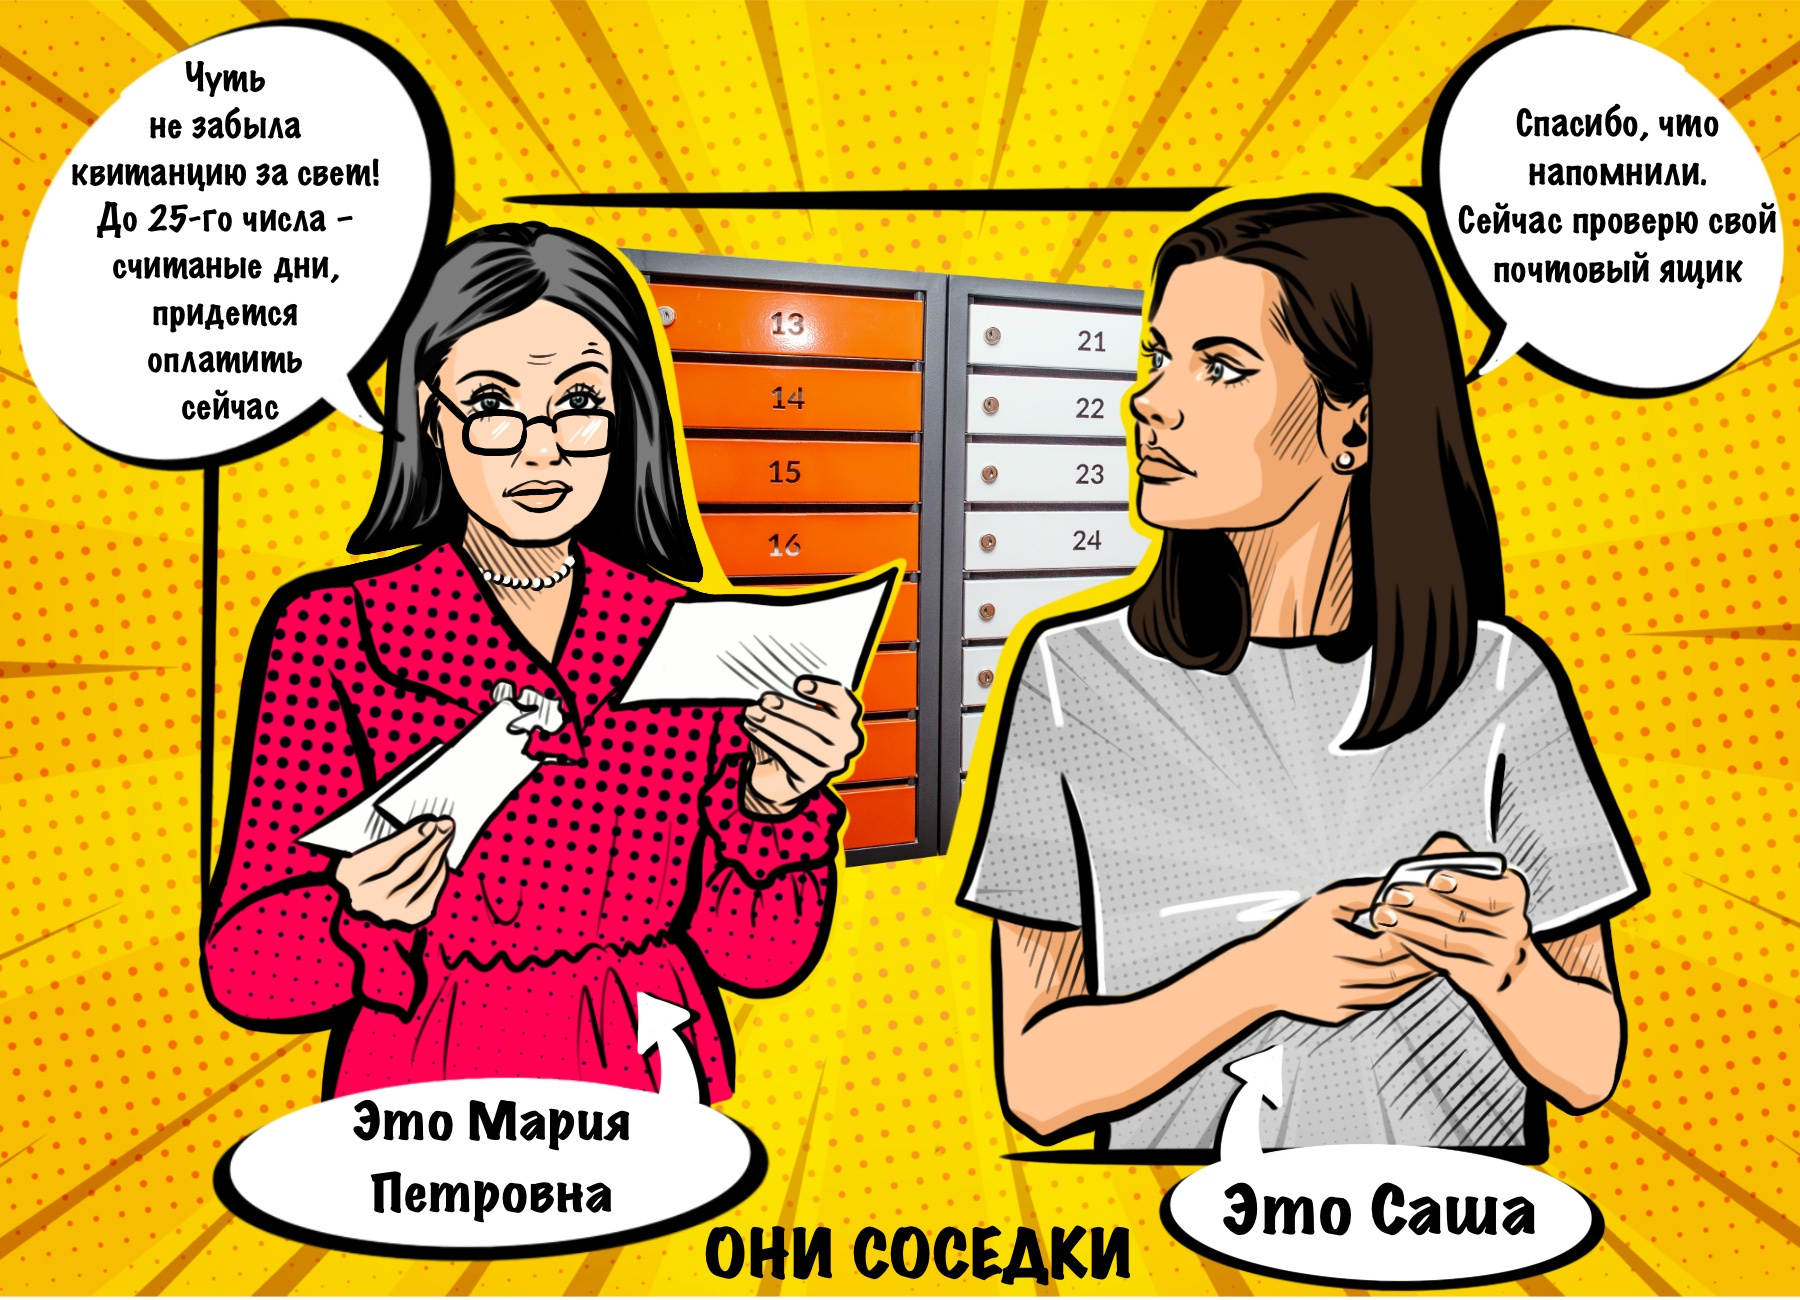 Соседки встретились на лестничной площадке: Мария Петровна поспешила забрать квитанцию, а Саша даже не заглянула в почтовый ящик